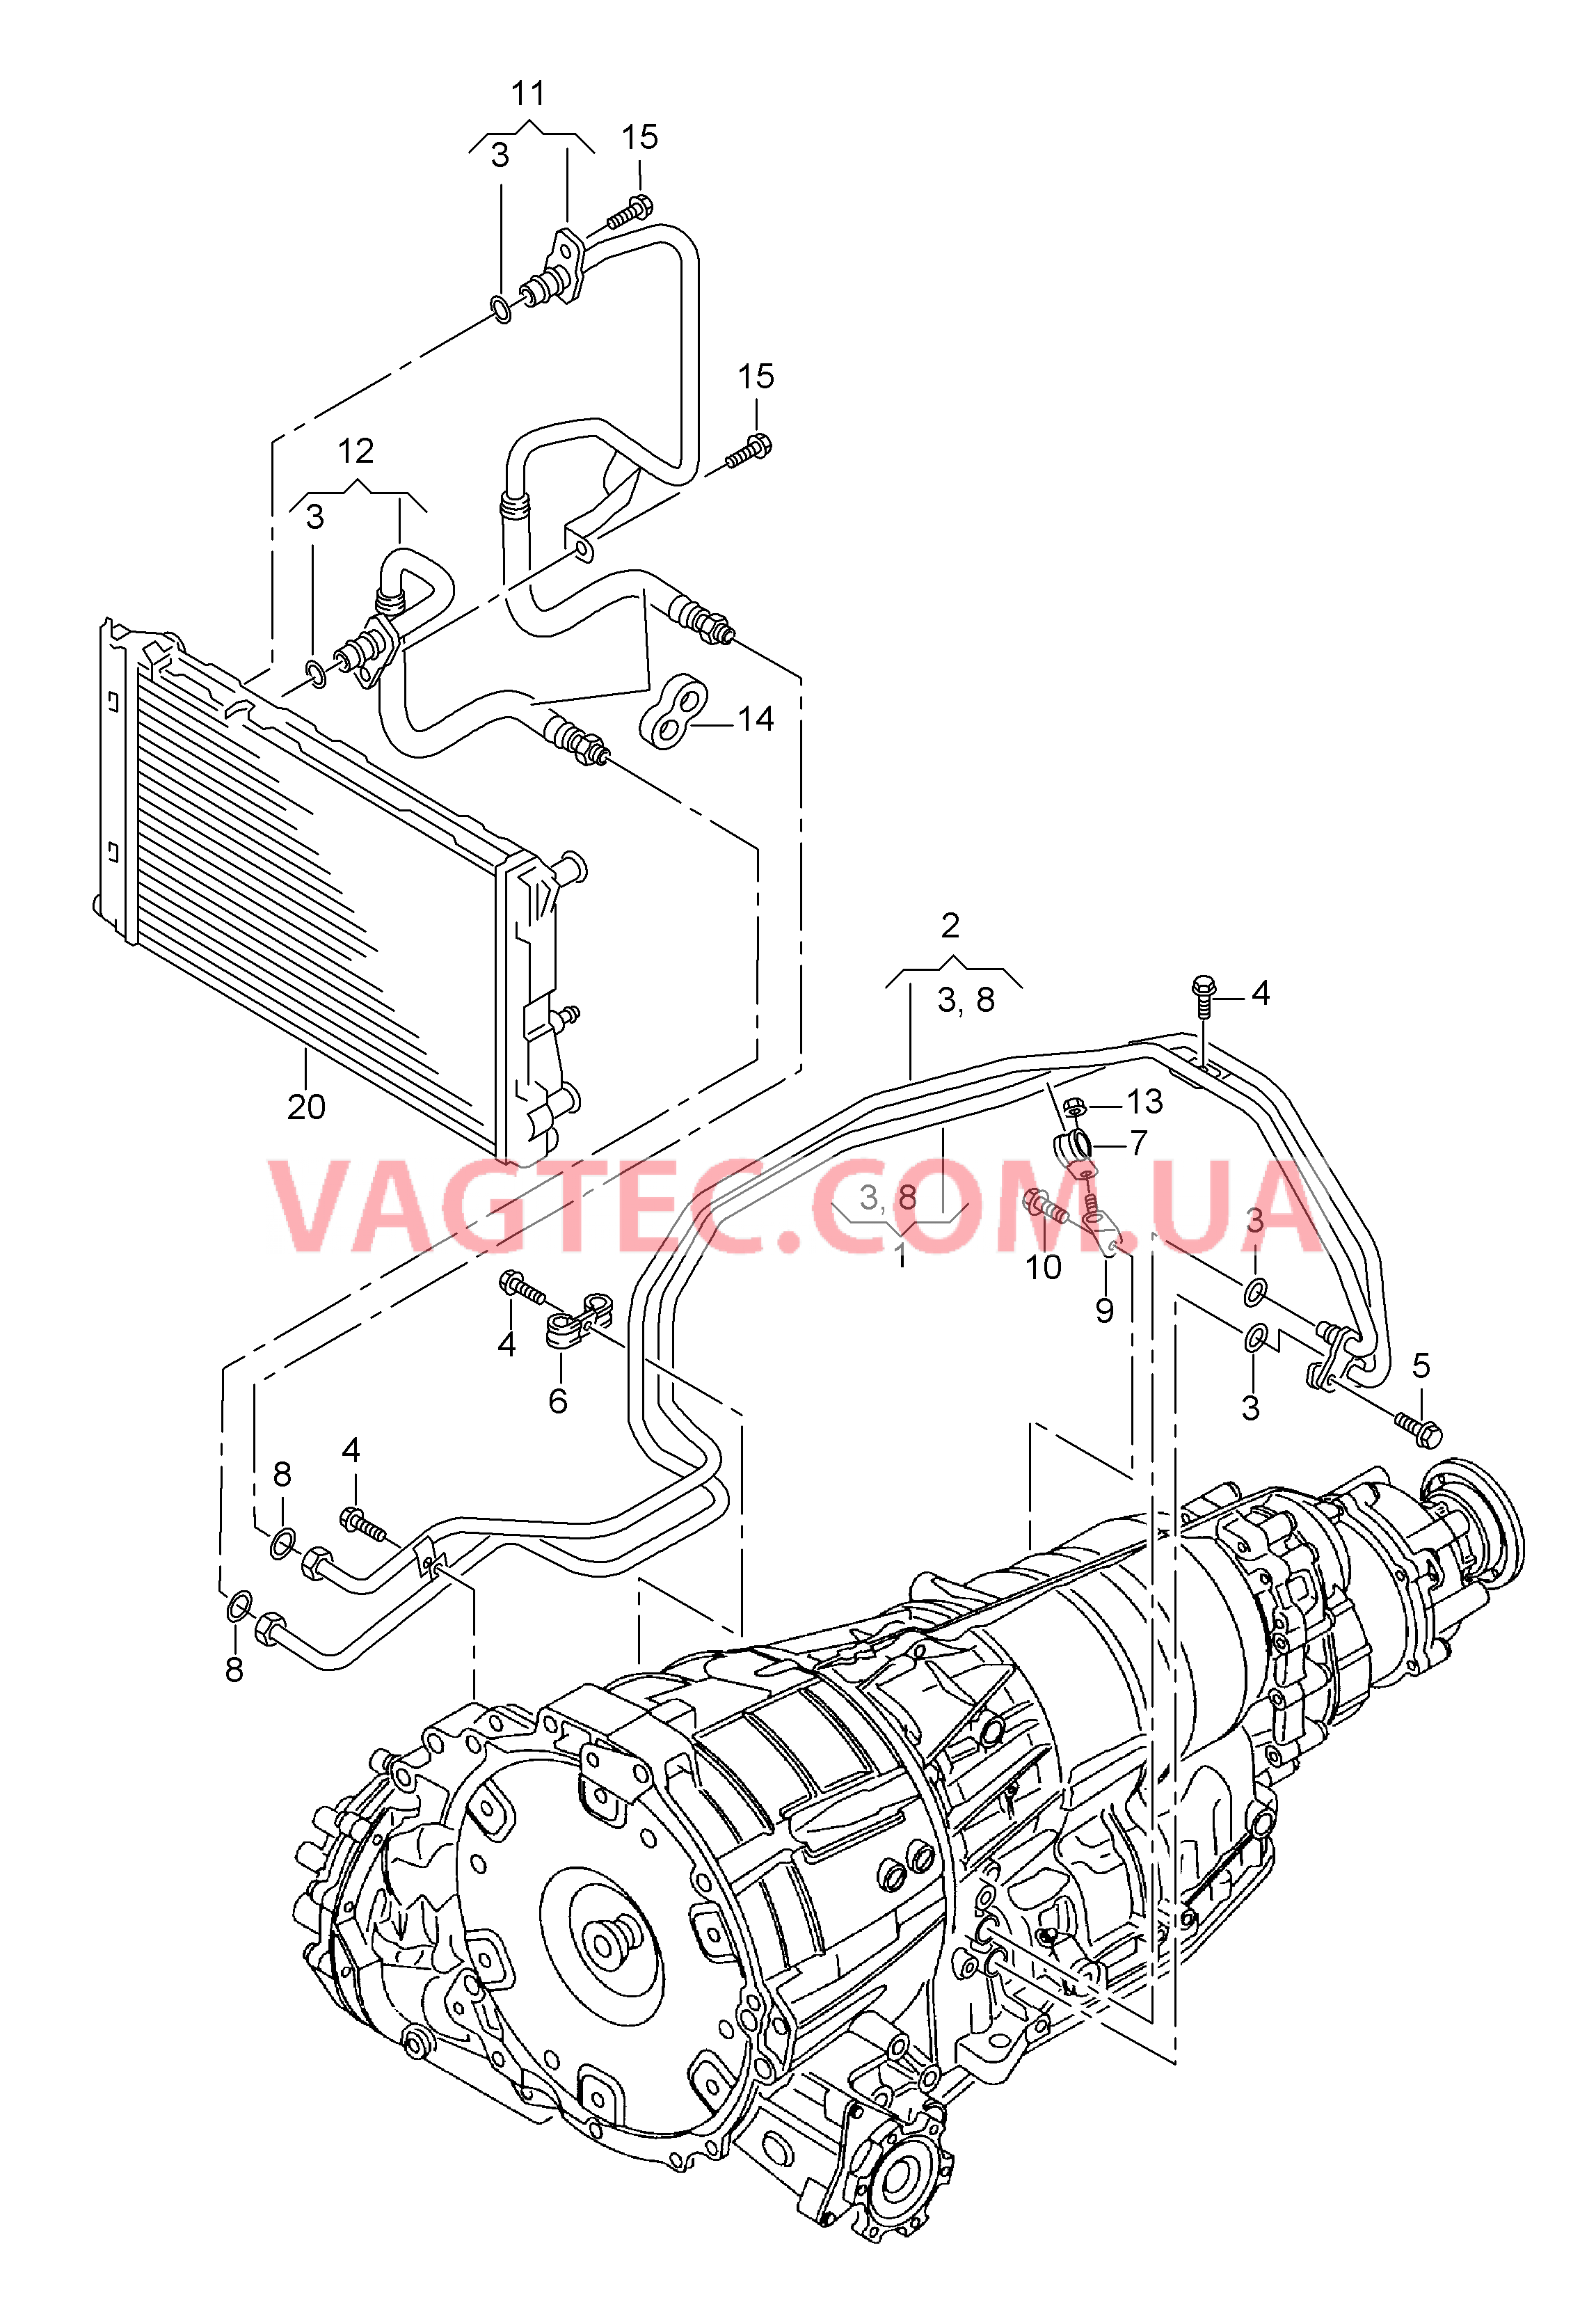 Напорный маслопровод для охлаждения масла коробки передач  8-ступенчатая АКП для а/м с гибридным приводом  для AUDI Q5 2017